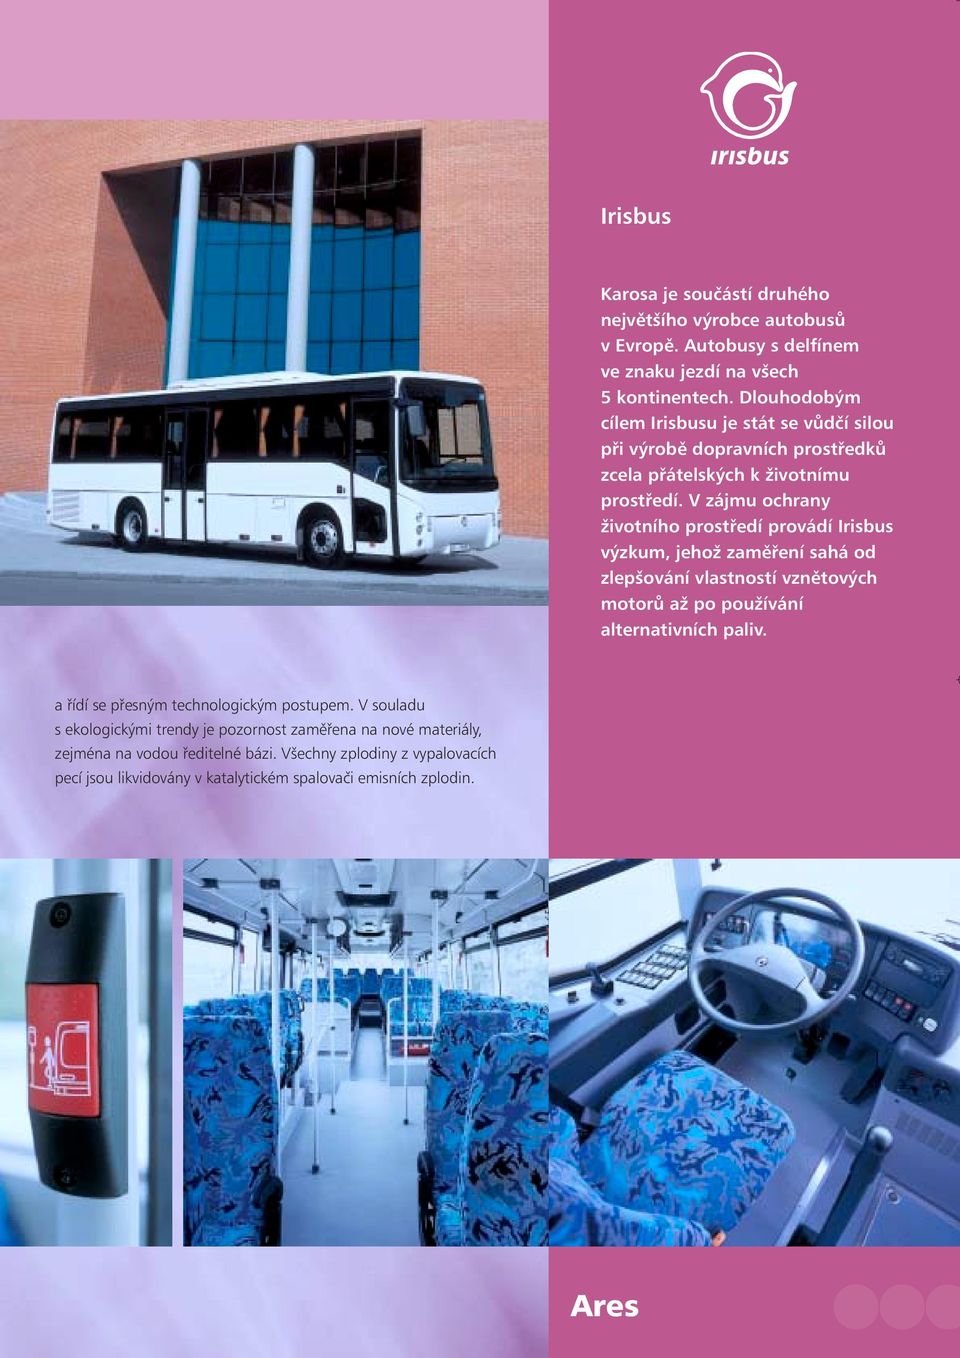 V zájmu ochrany životního prostředí provádí Irisbus výzkum, jehož zaměření sahá od zlepšování vlastností vznětových motorů až po používání alternativních paliv.